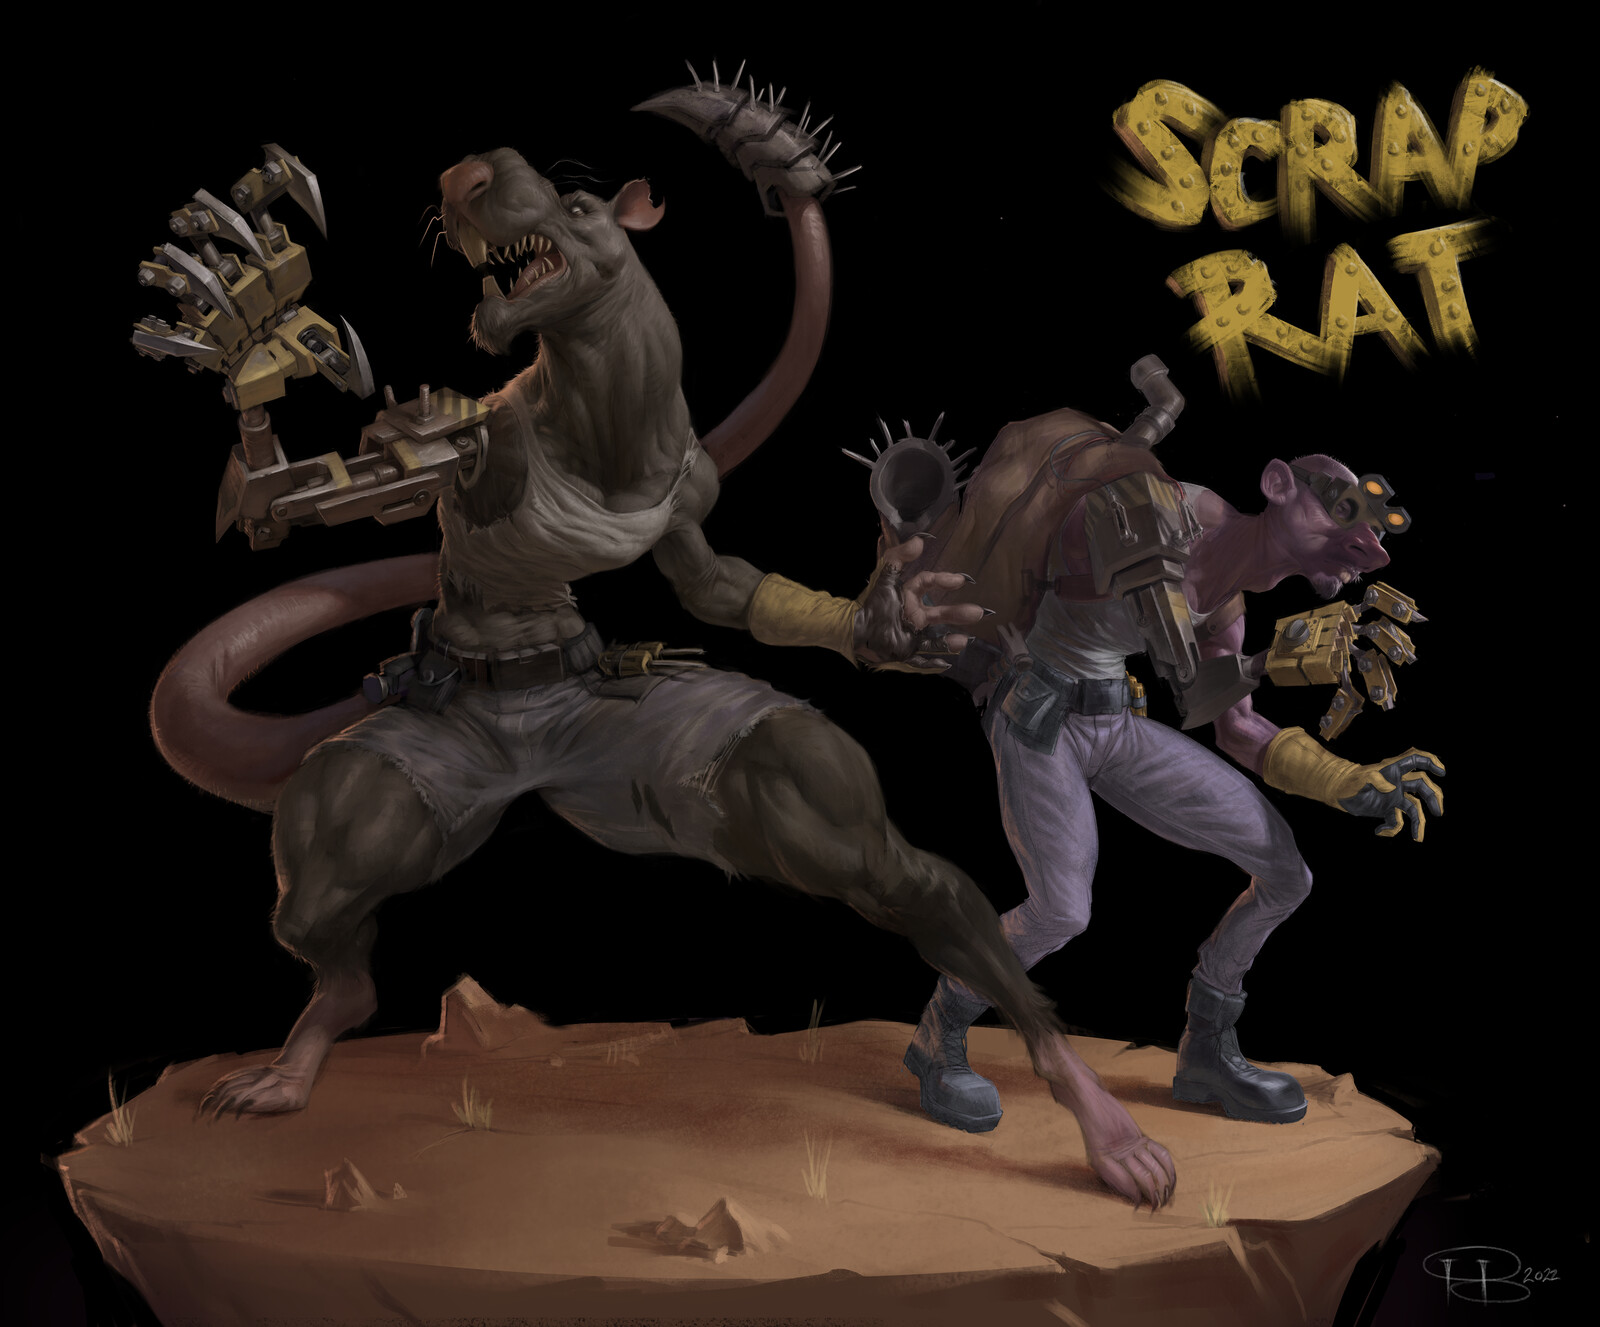 Scrap Rat